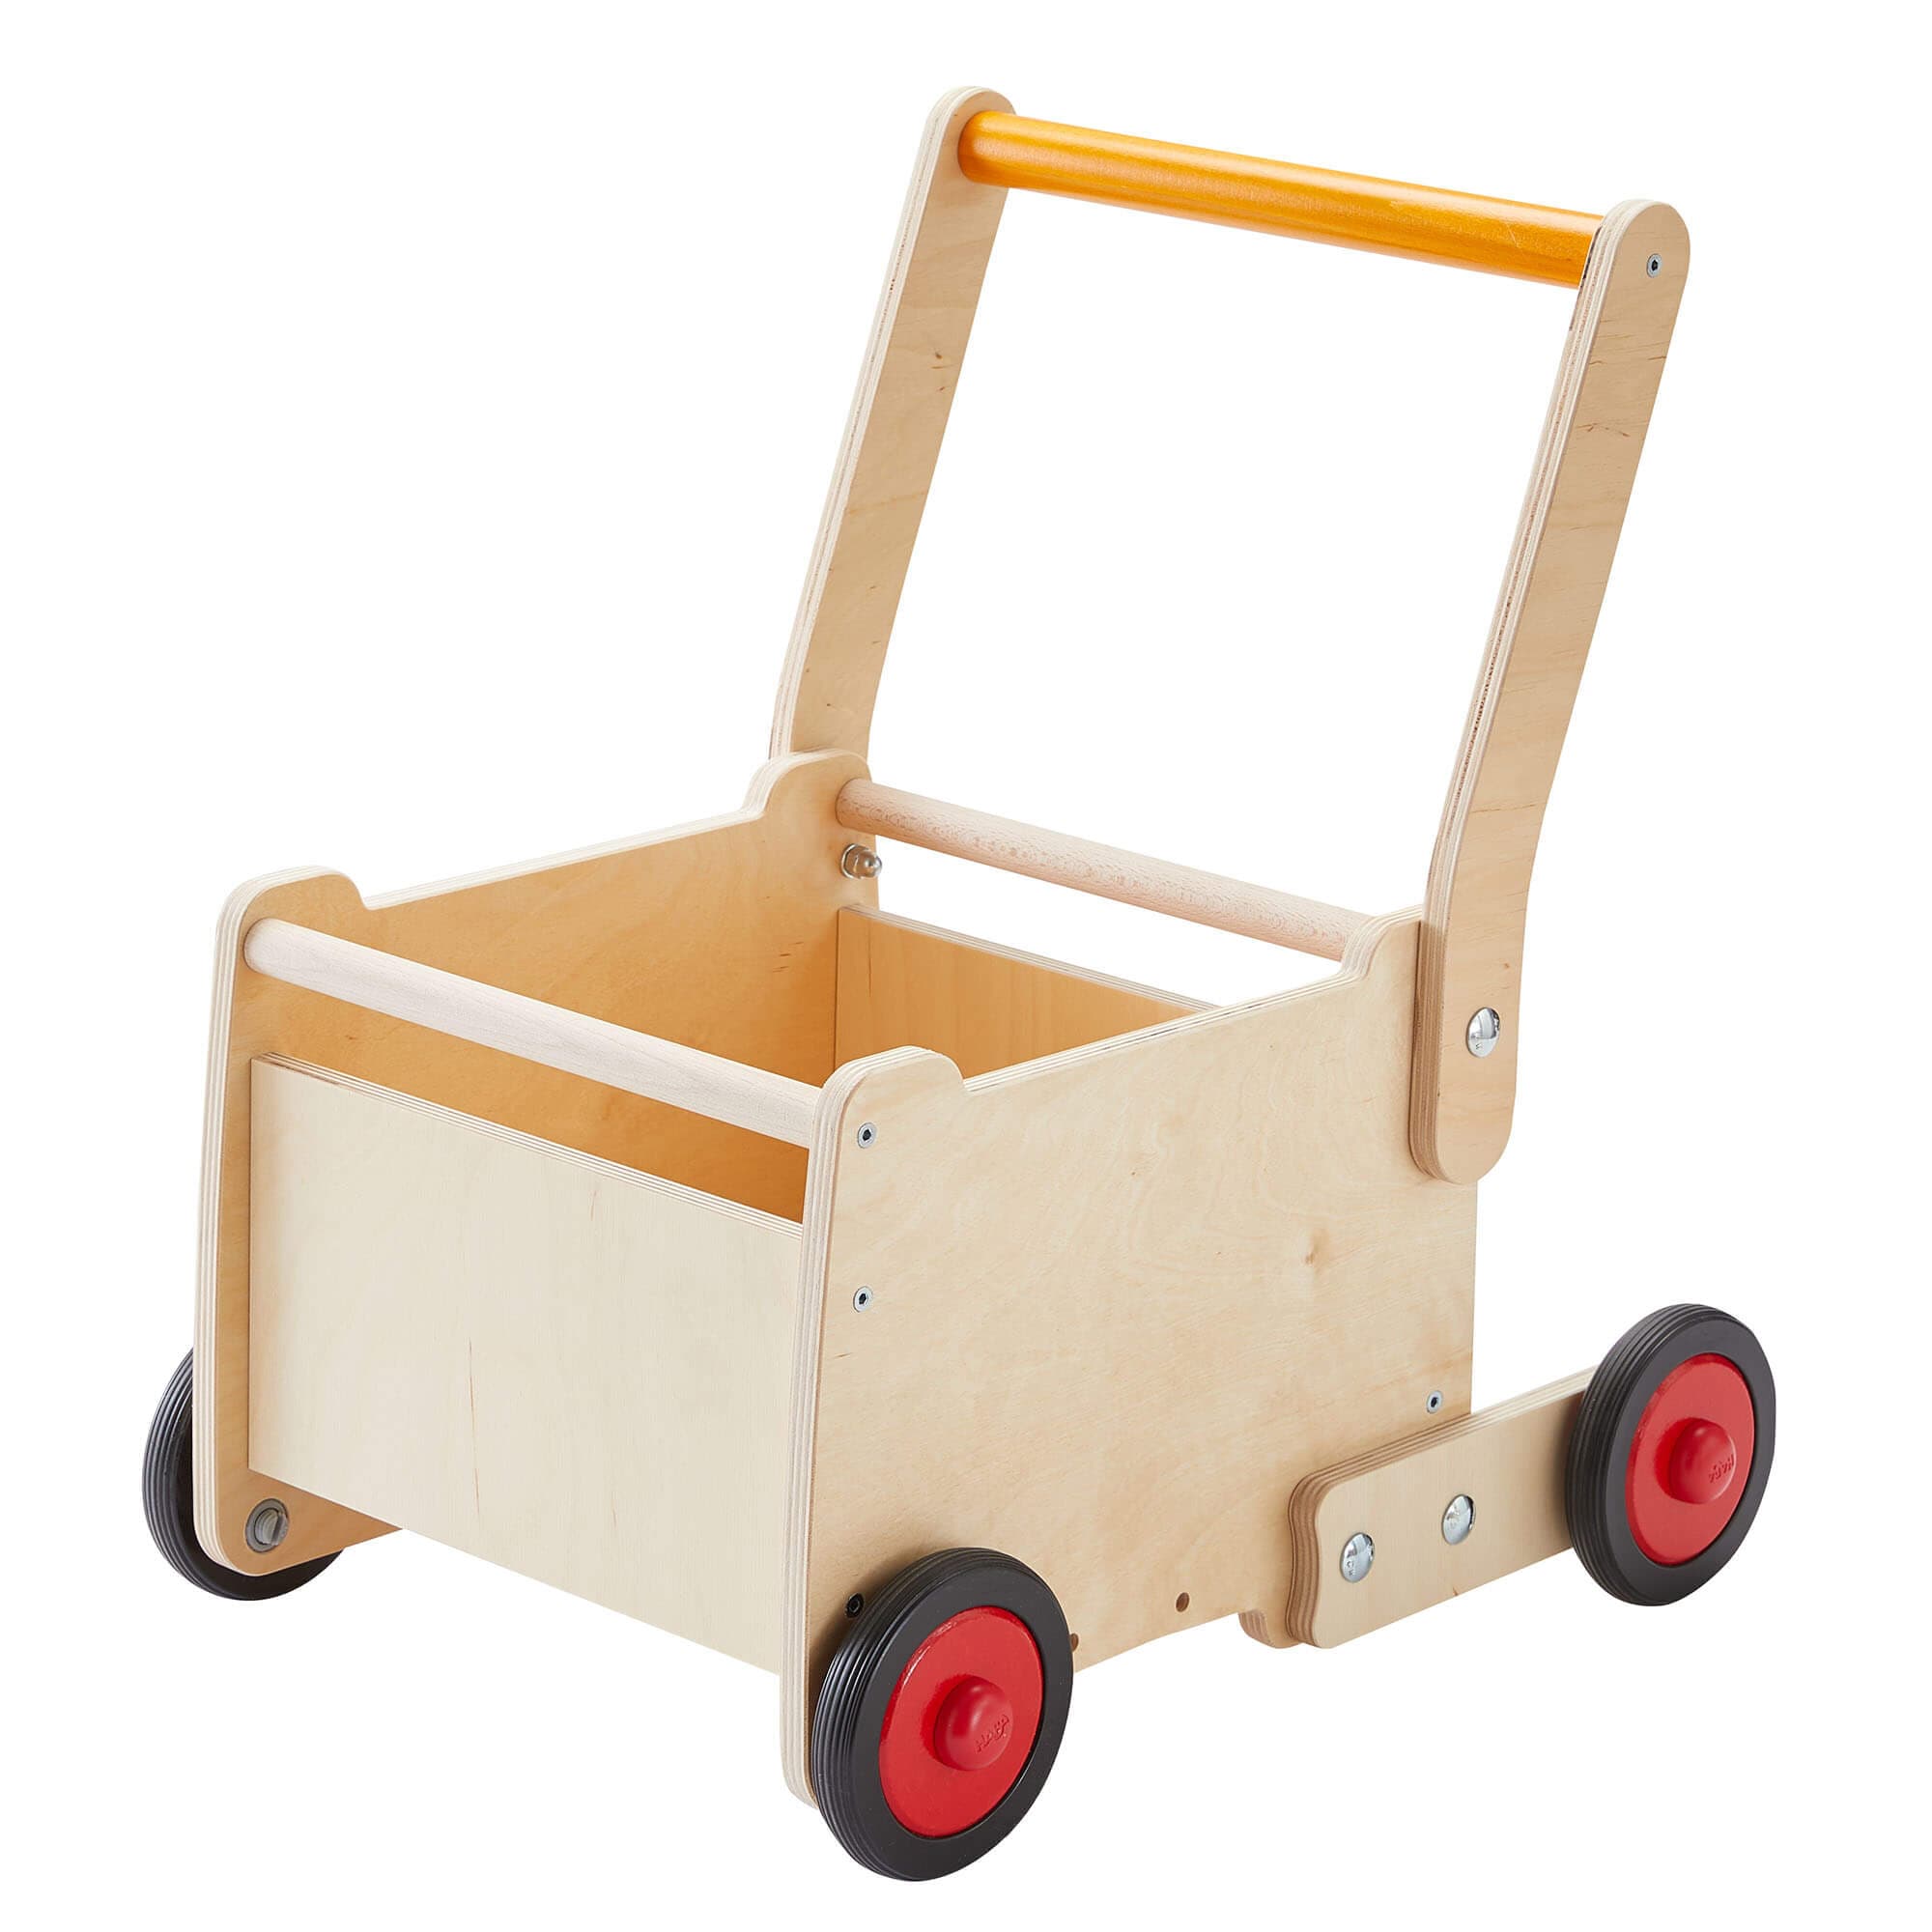 HABA USA Dragon Wagon Baby Walker Cart Adjusted Wheel